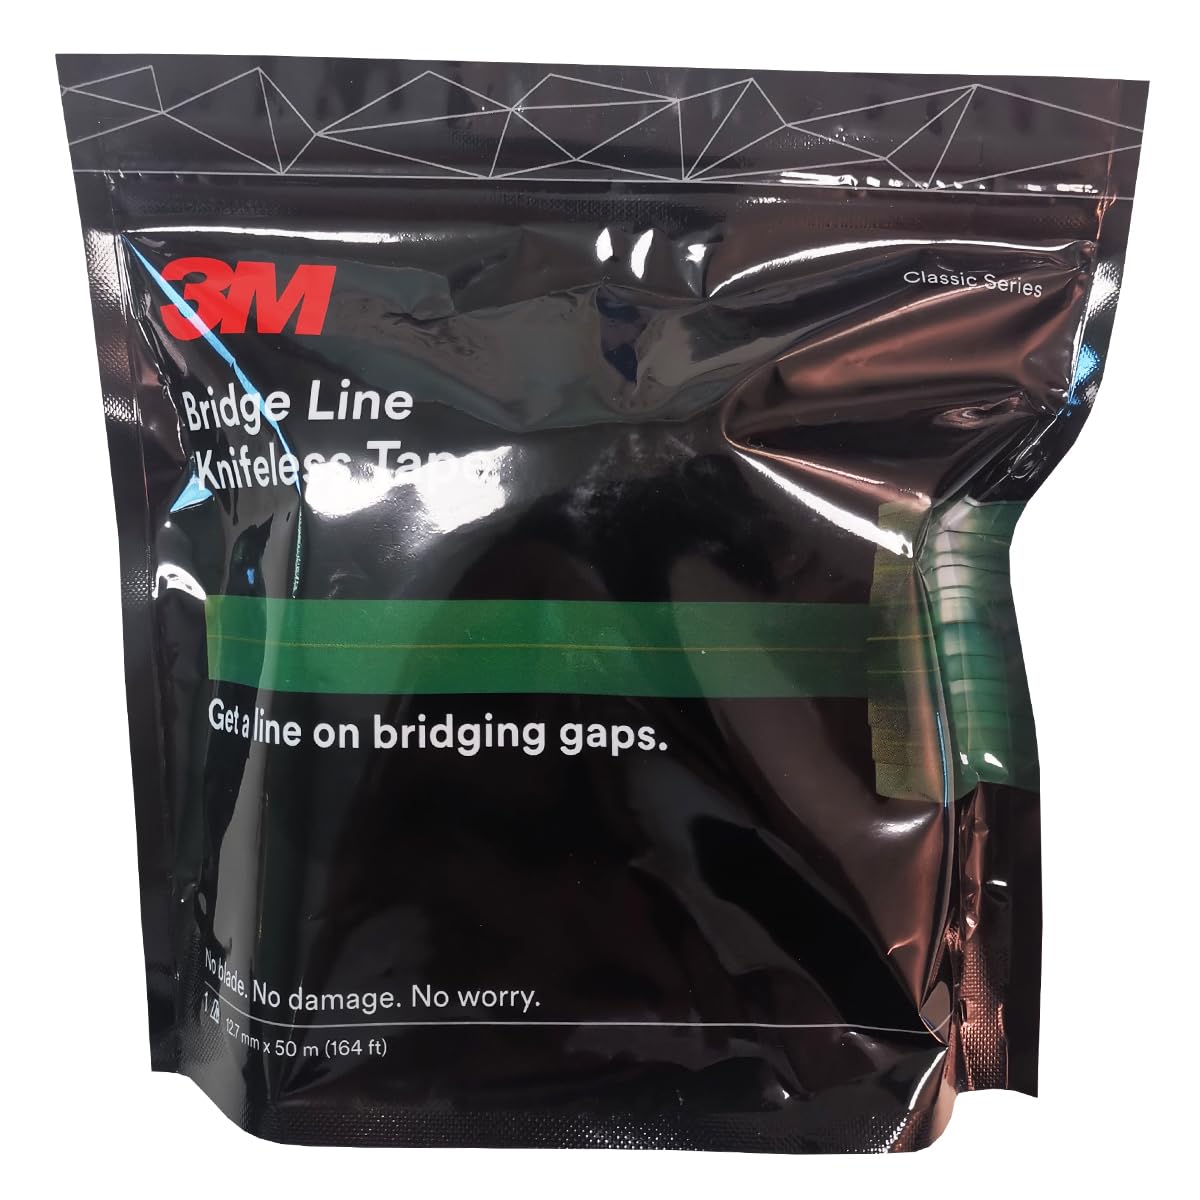 3M | Knifeless Tape, Schneidband für Detailarbeiten beim Wrapping, Bridge Line 12,7mm x 50m, Schneidedraht für präzises Schneiden von Folien ohne Klingen von 3M